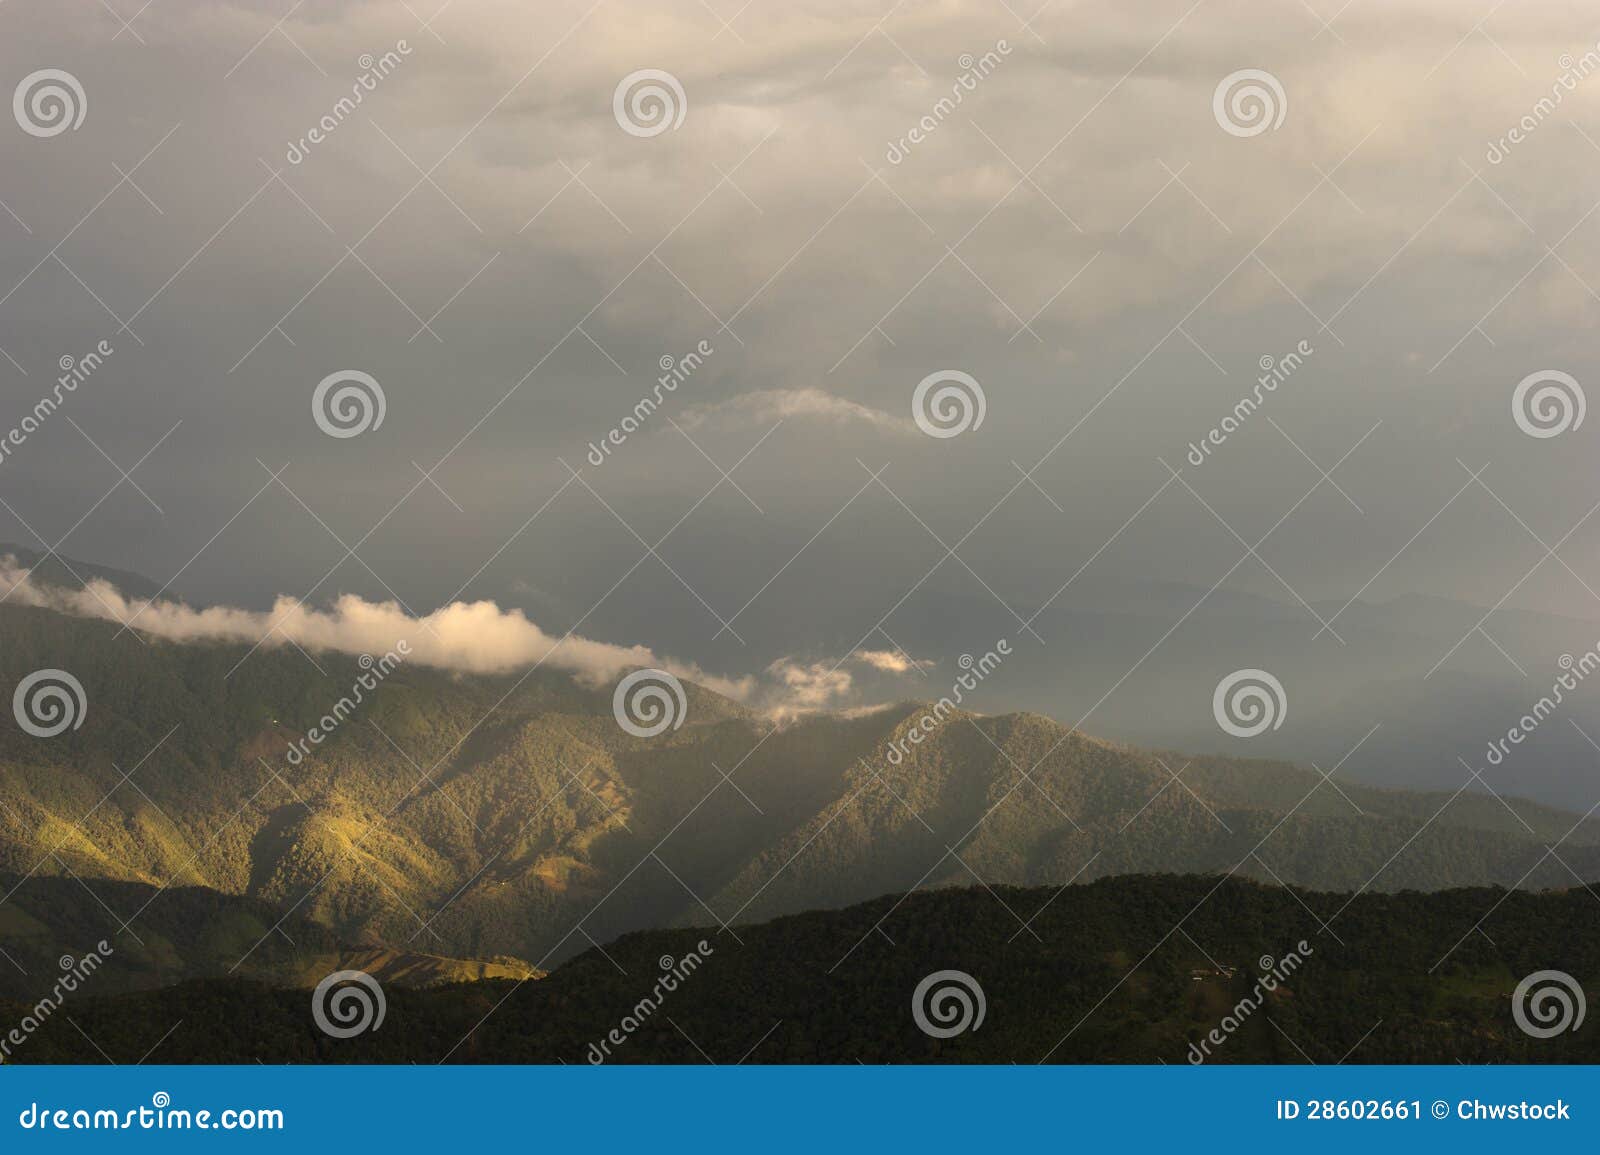 colombia - mountains in the sierra nevada de santa marta